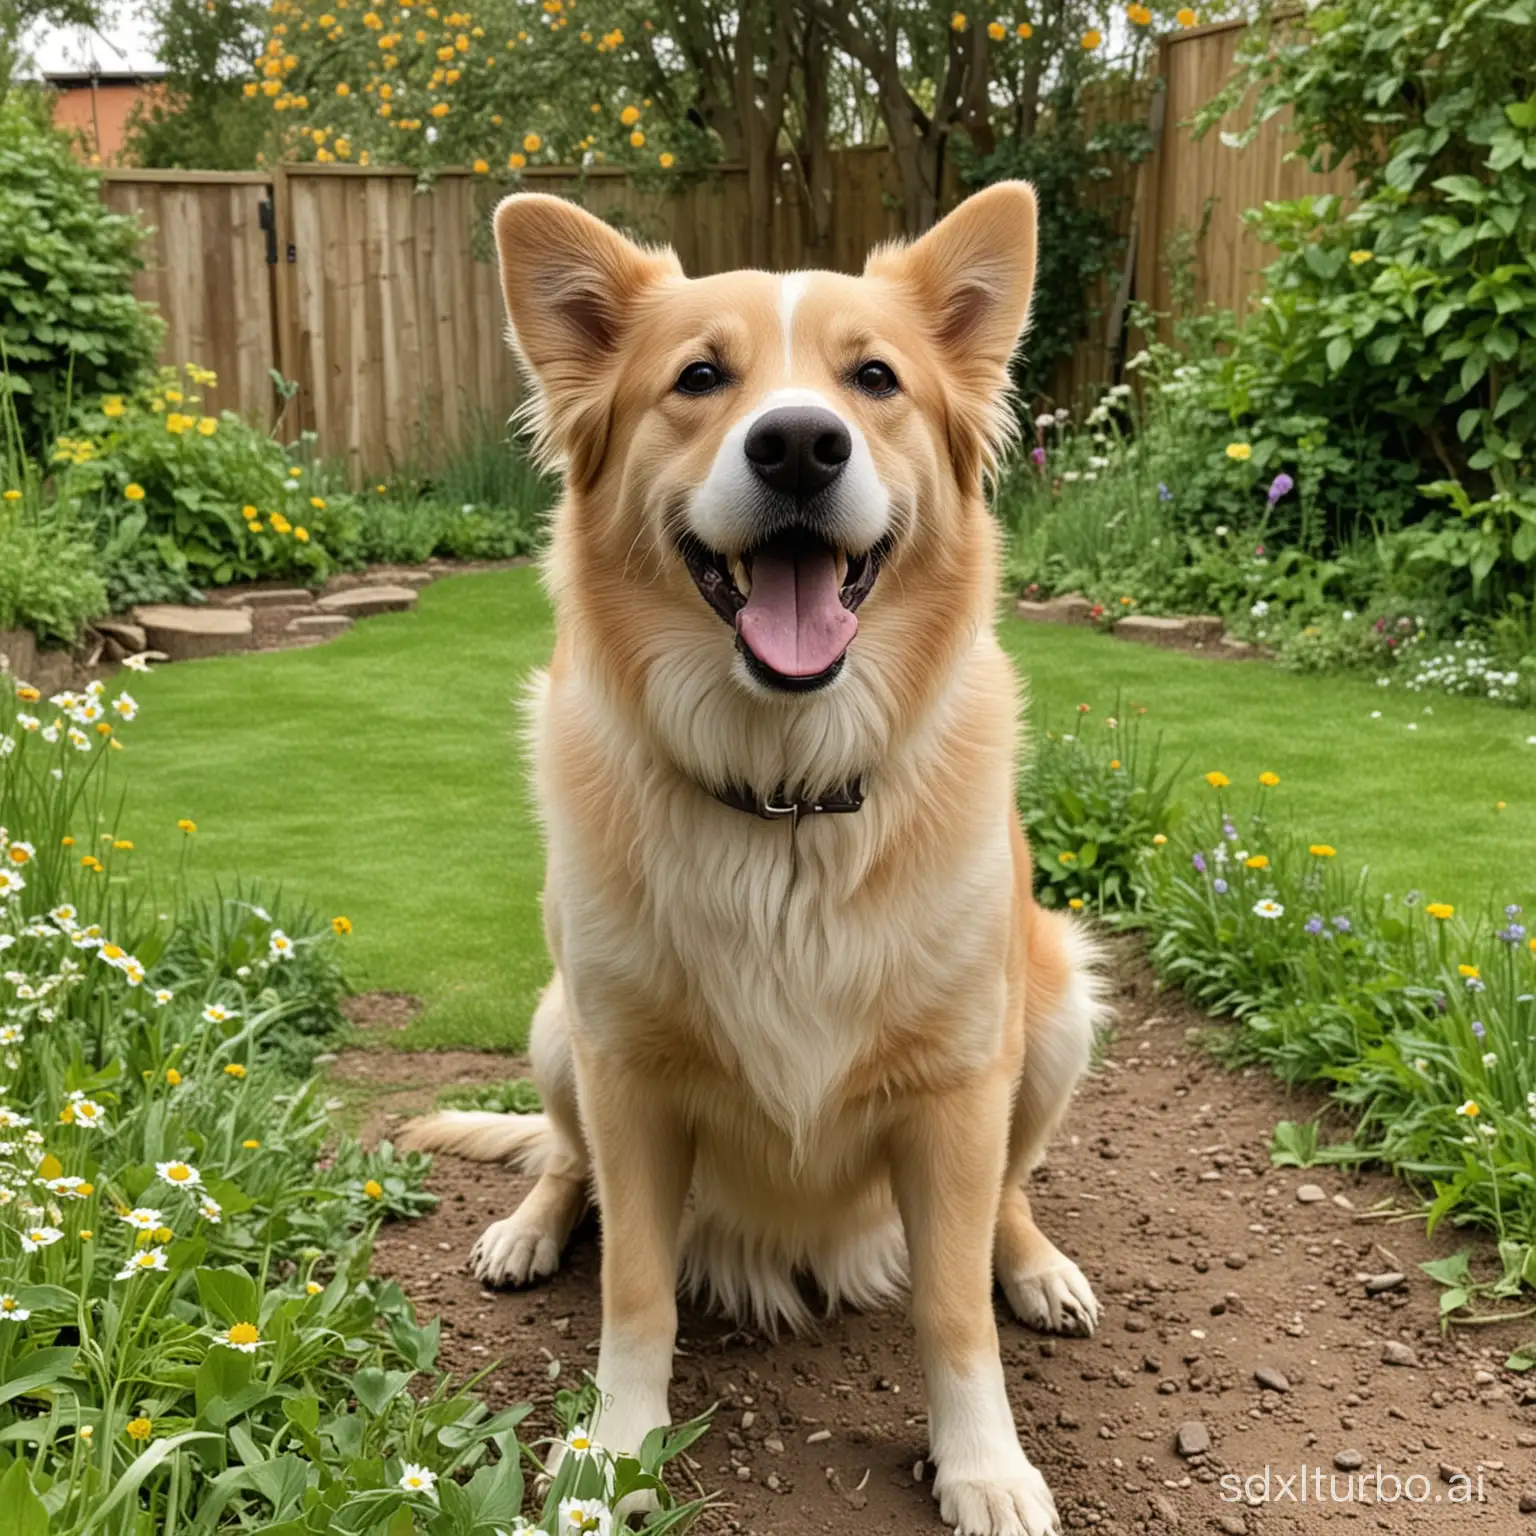 Joyful-Dog-Playing-in-Vibrant-Garden-Setting